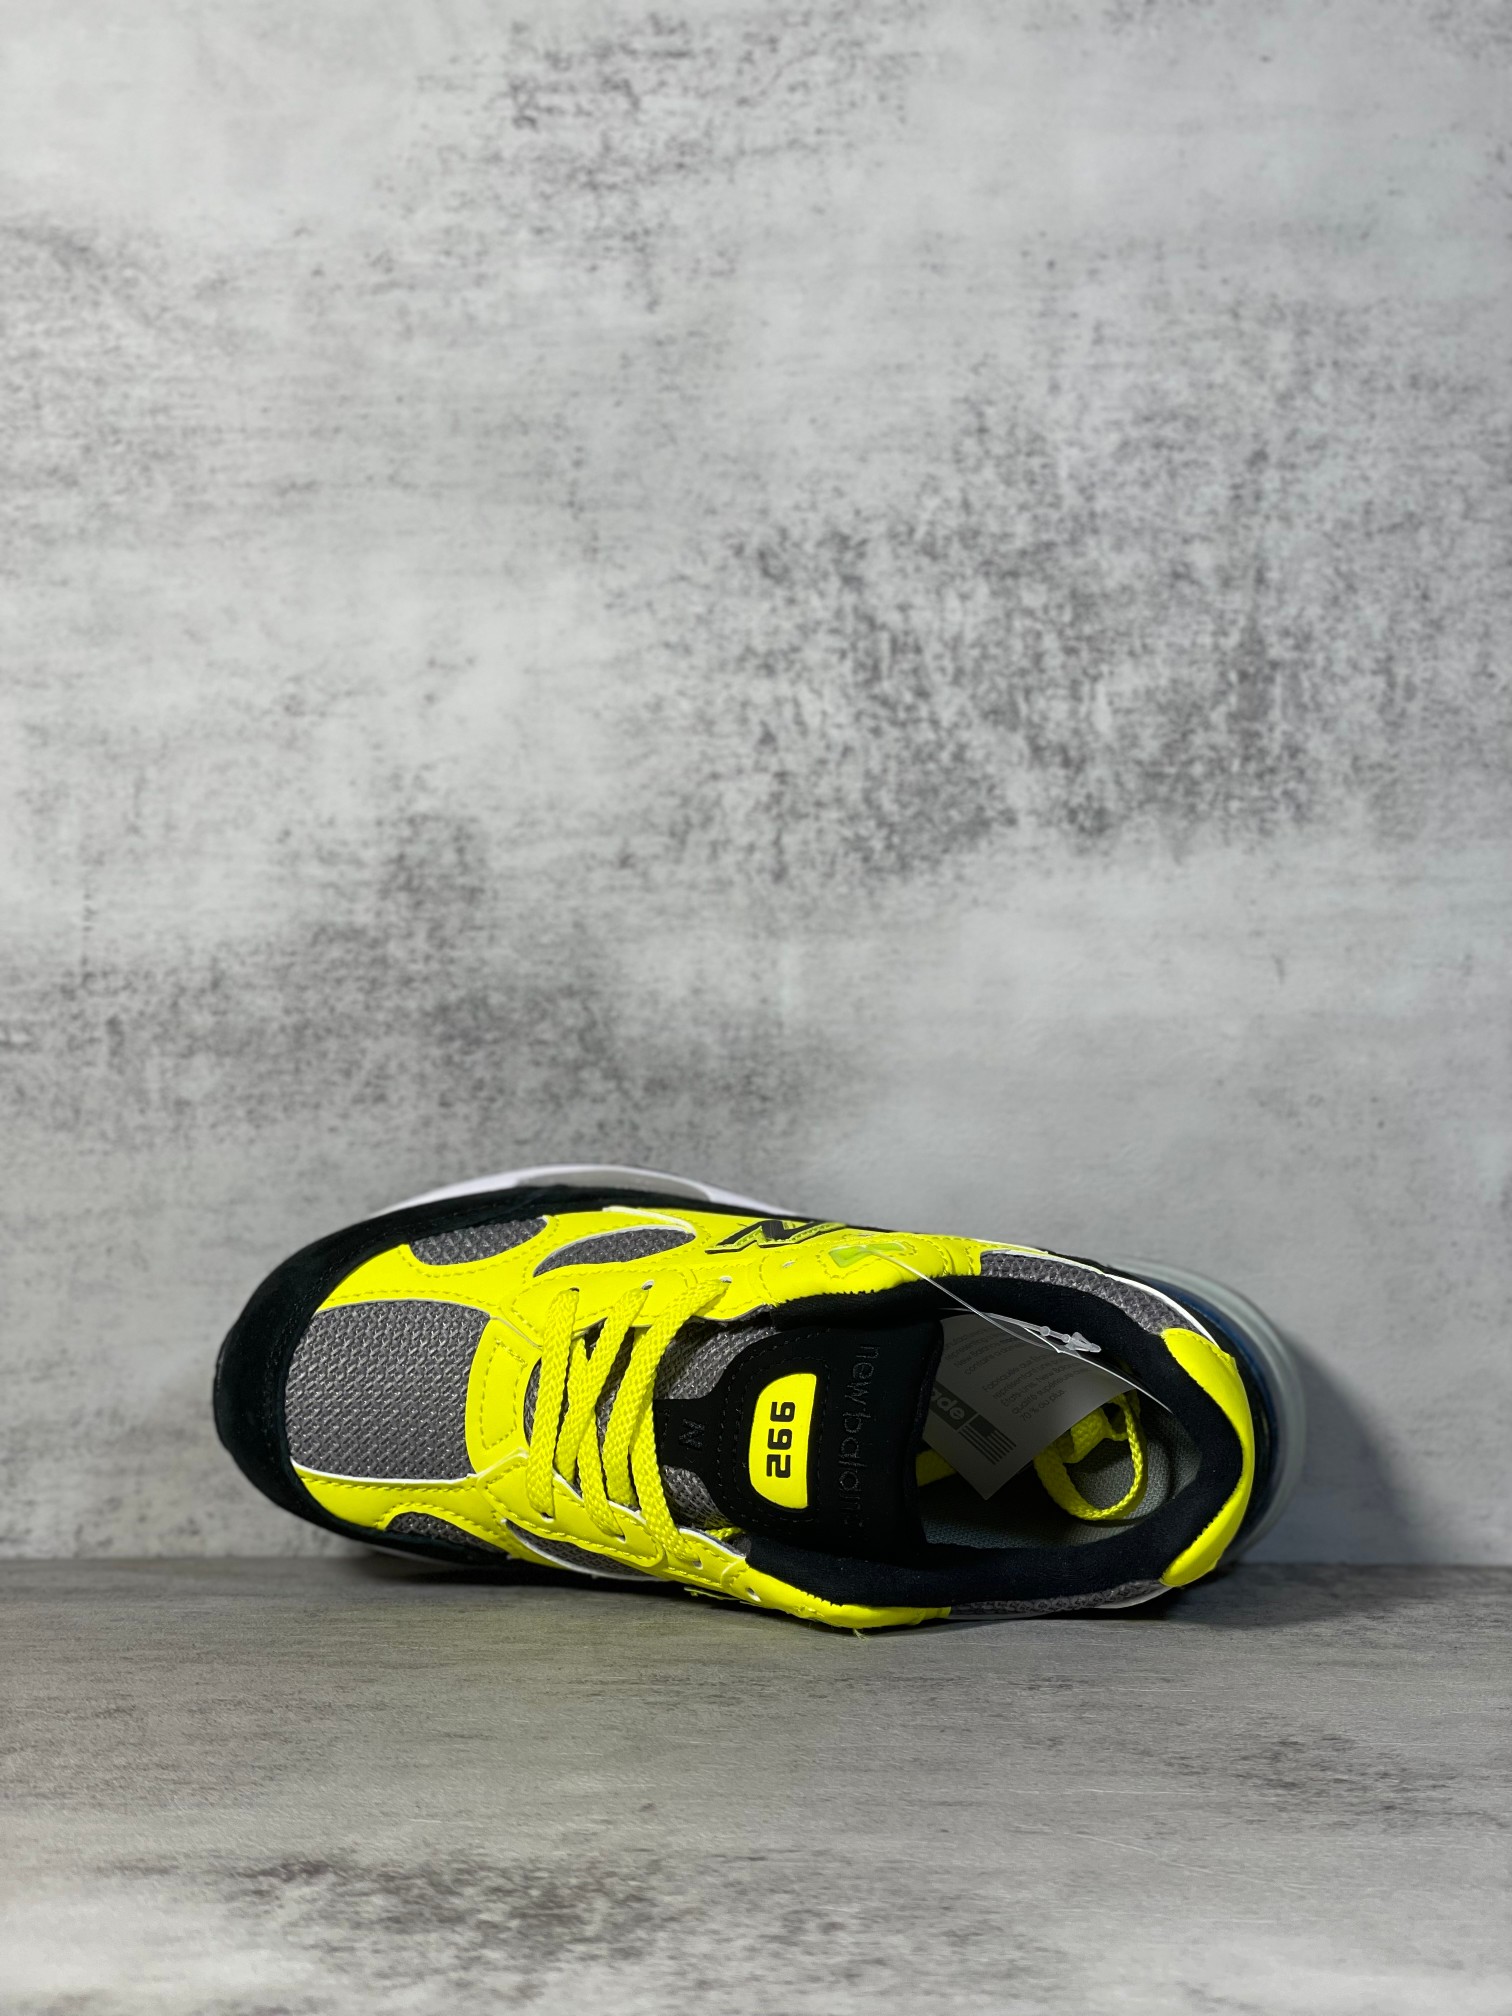 NB992联名款M992FG外贸纯原版全码出货黑黄全市场唯一原鞋开发全鞋使用原材料打造大底单独开模打造拿